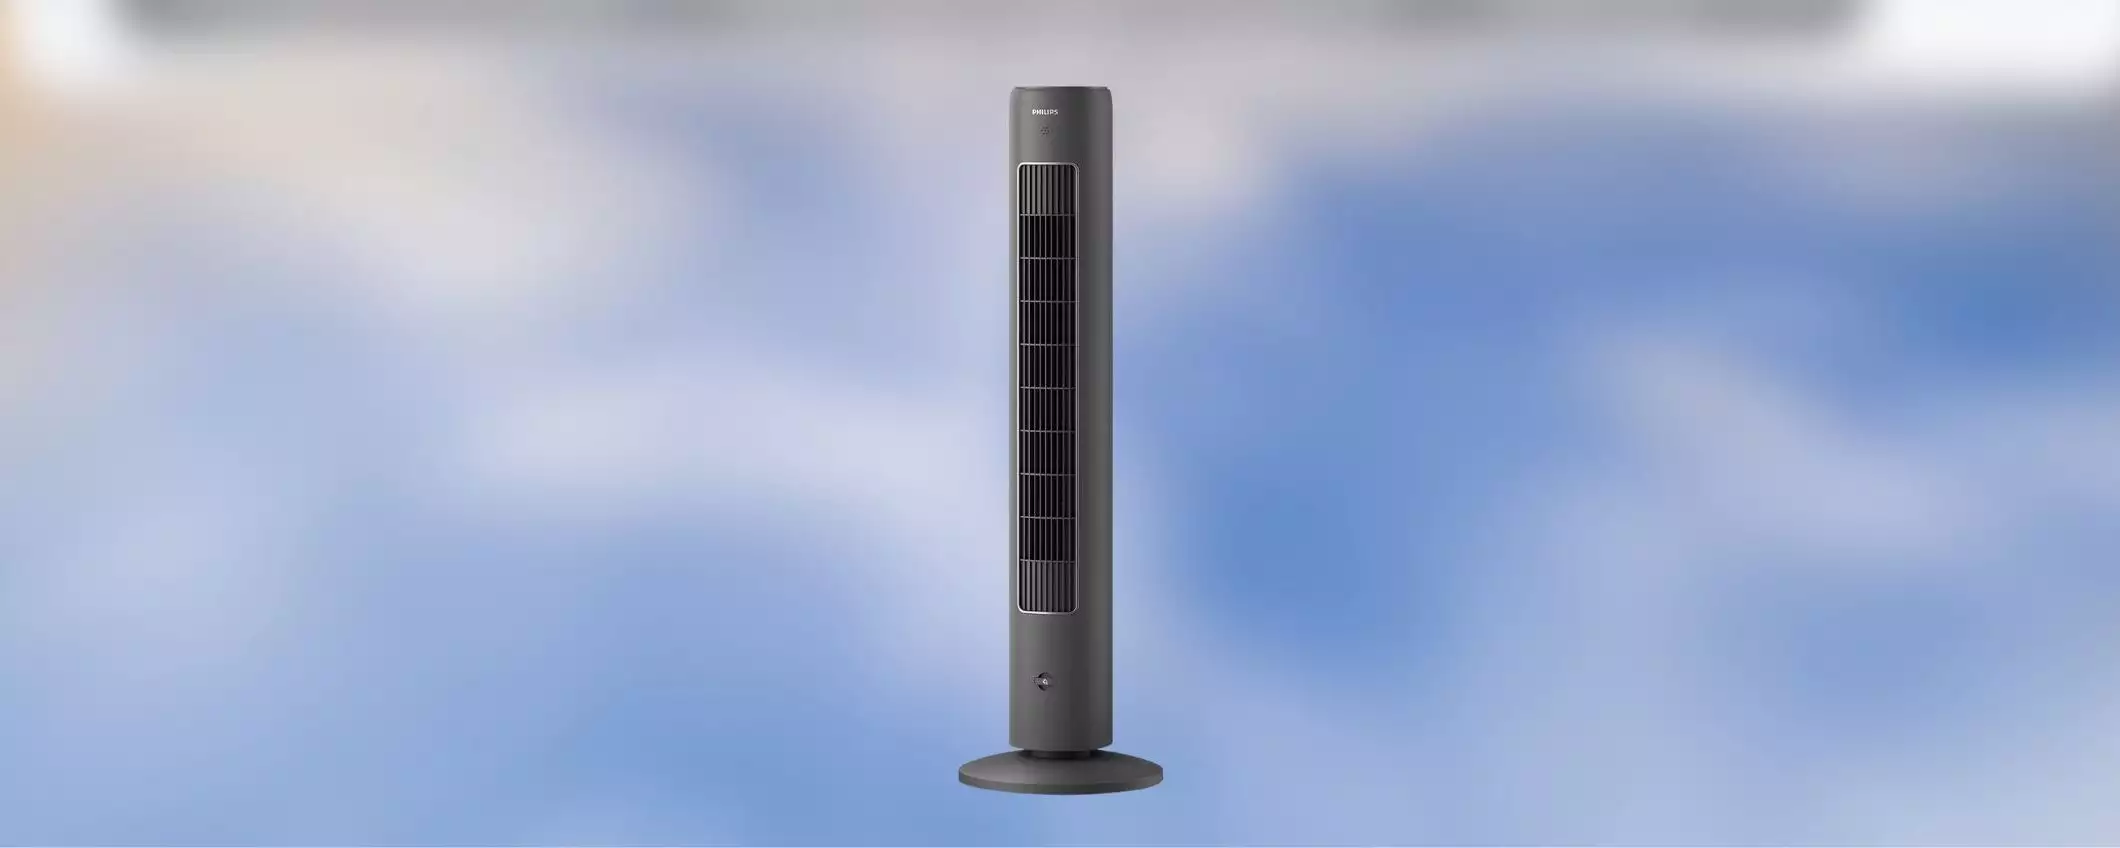 Ventilatore a torre: in SCONTO l'alternativa al condizionatore che ti RINFRESCA